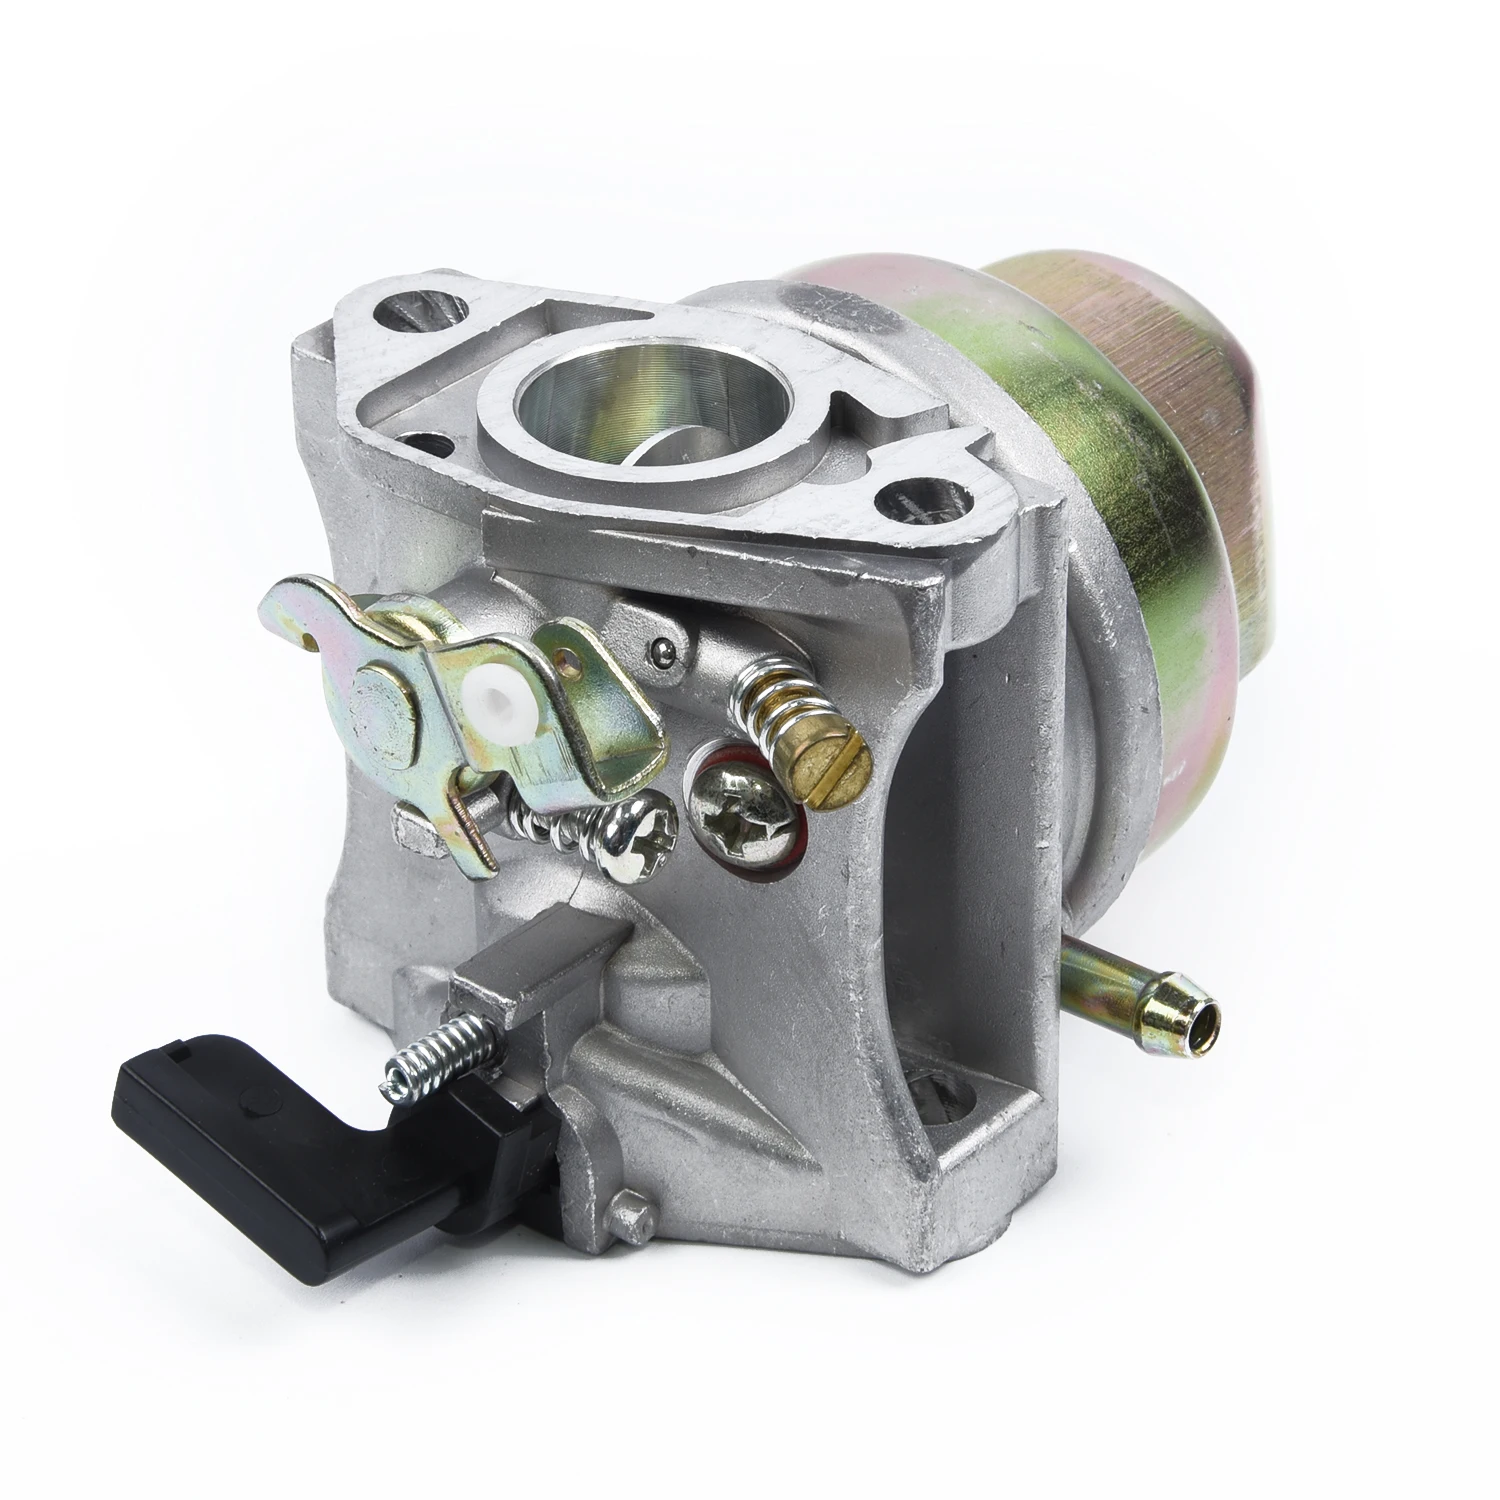 New Carburetor Carb For Honda G150 G200 Engine Rep.# 16100-883-095 16100-883-105 